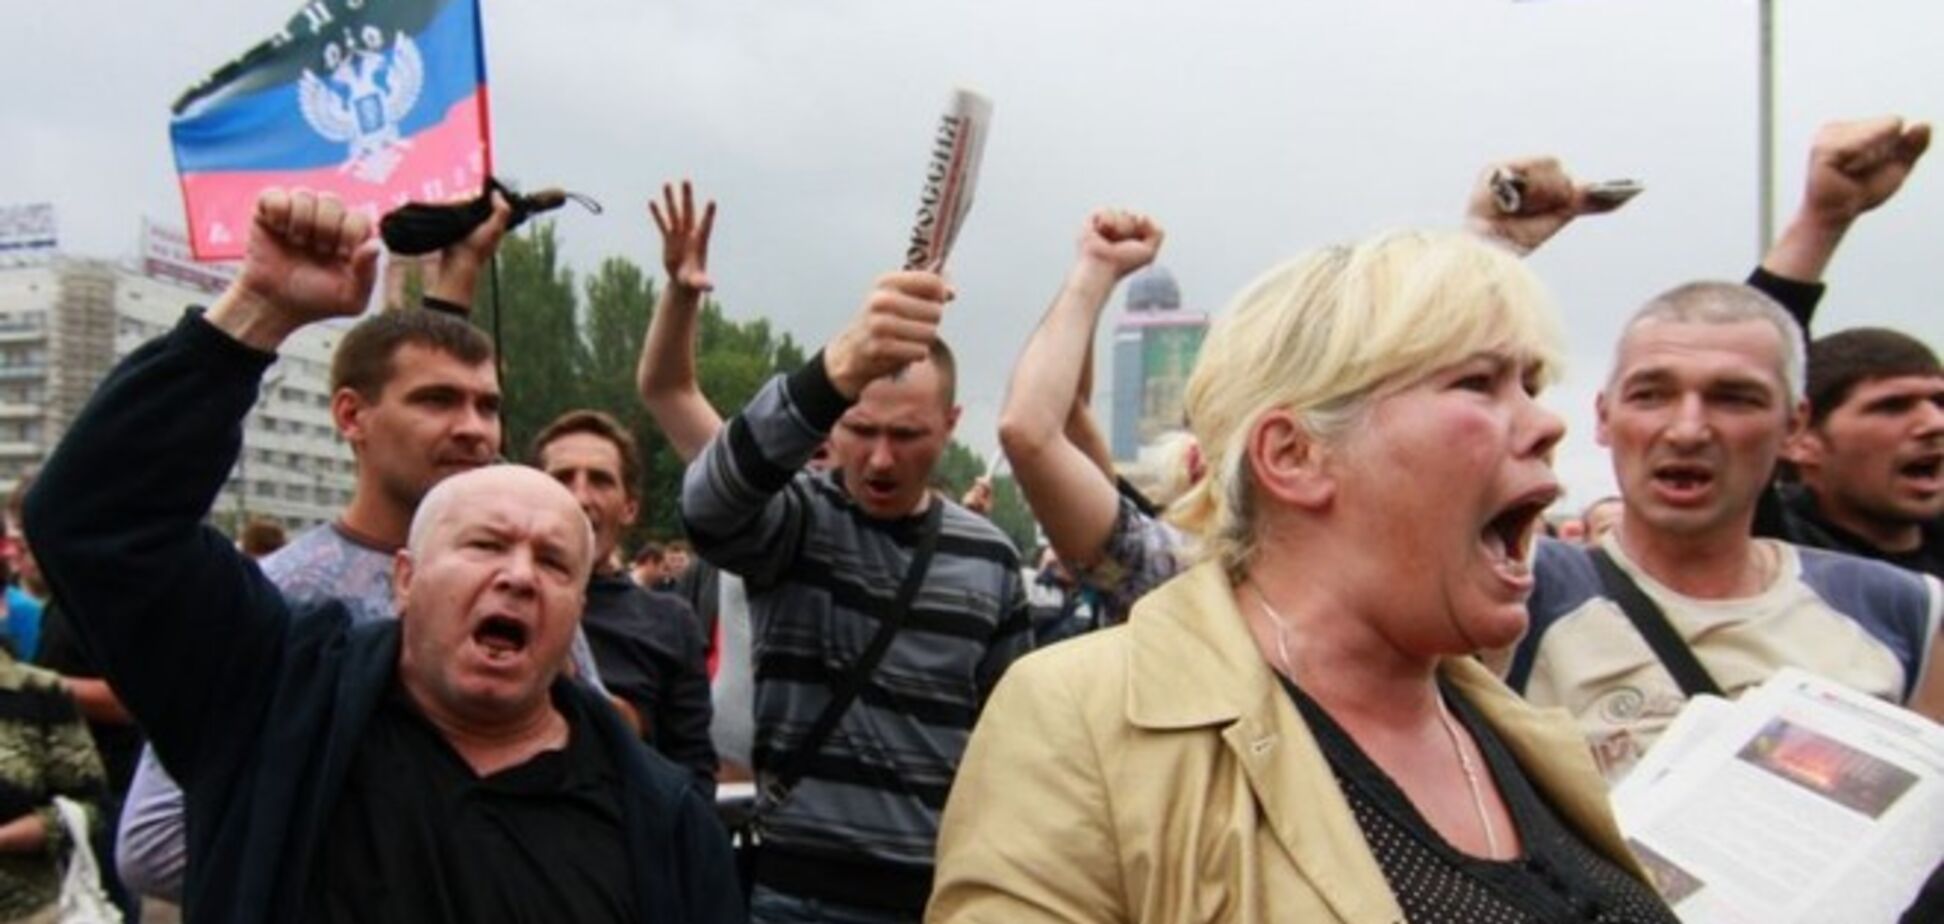 У Донецьку близько тисячі осіб з прапорами 'ДНР' протестували проти АТО